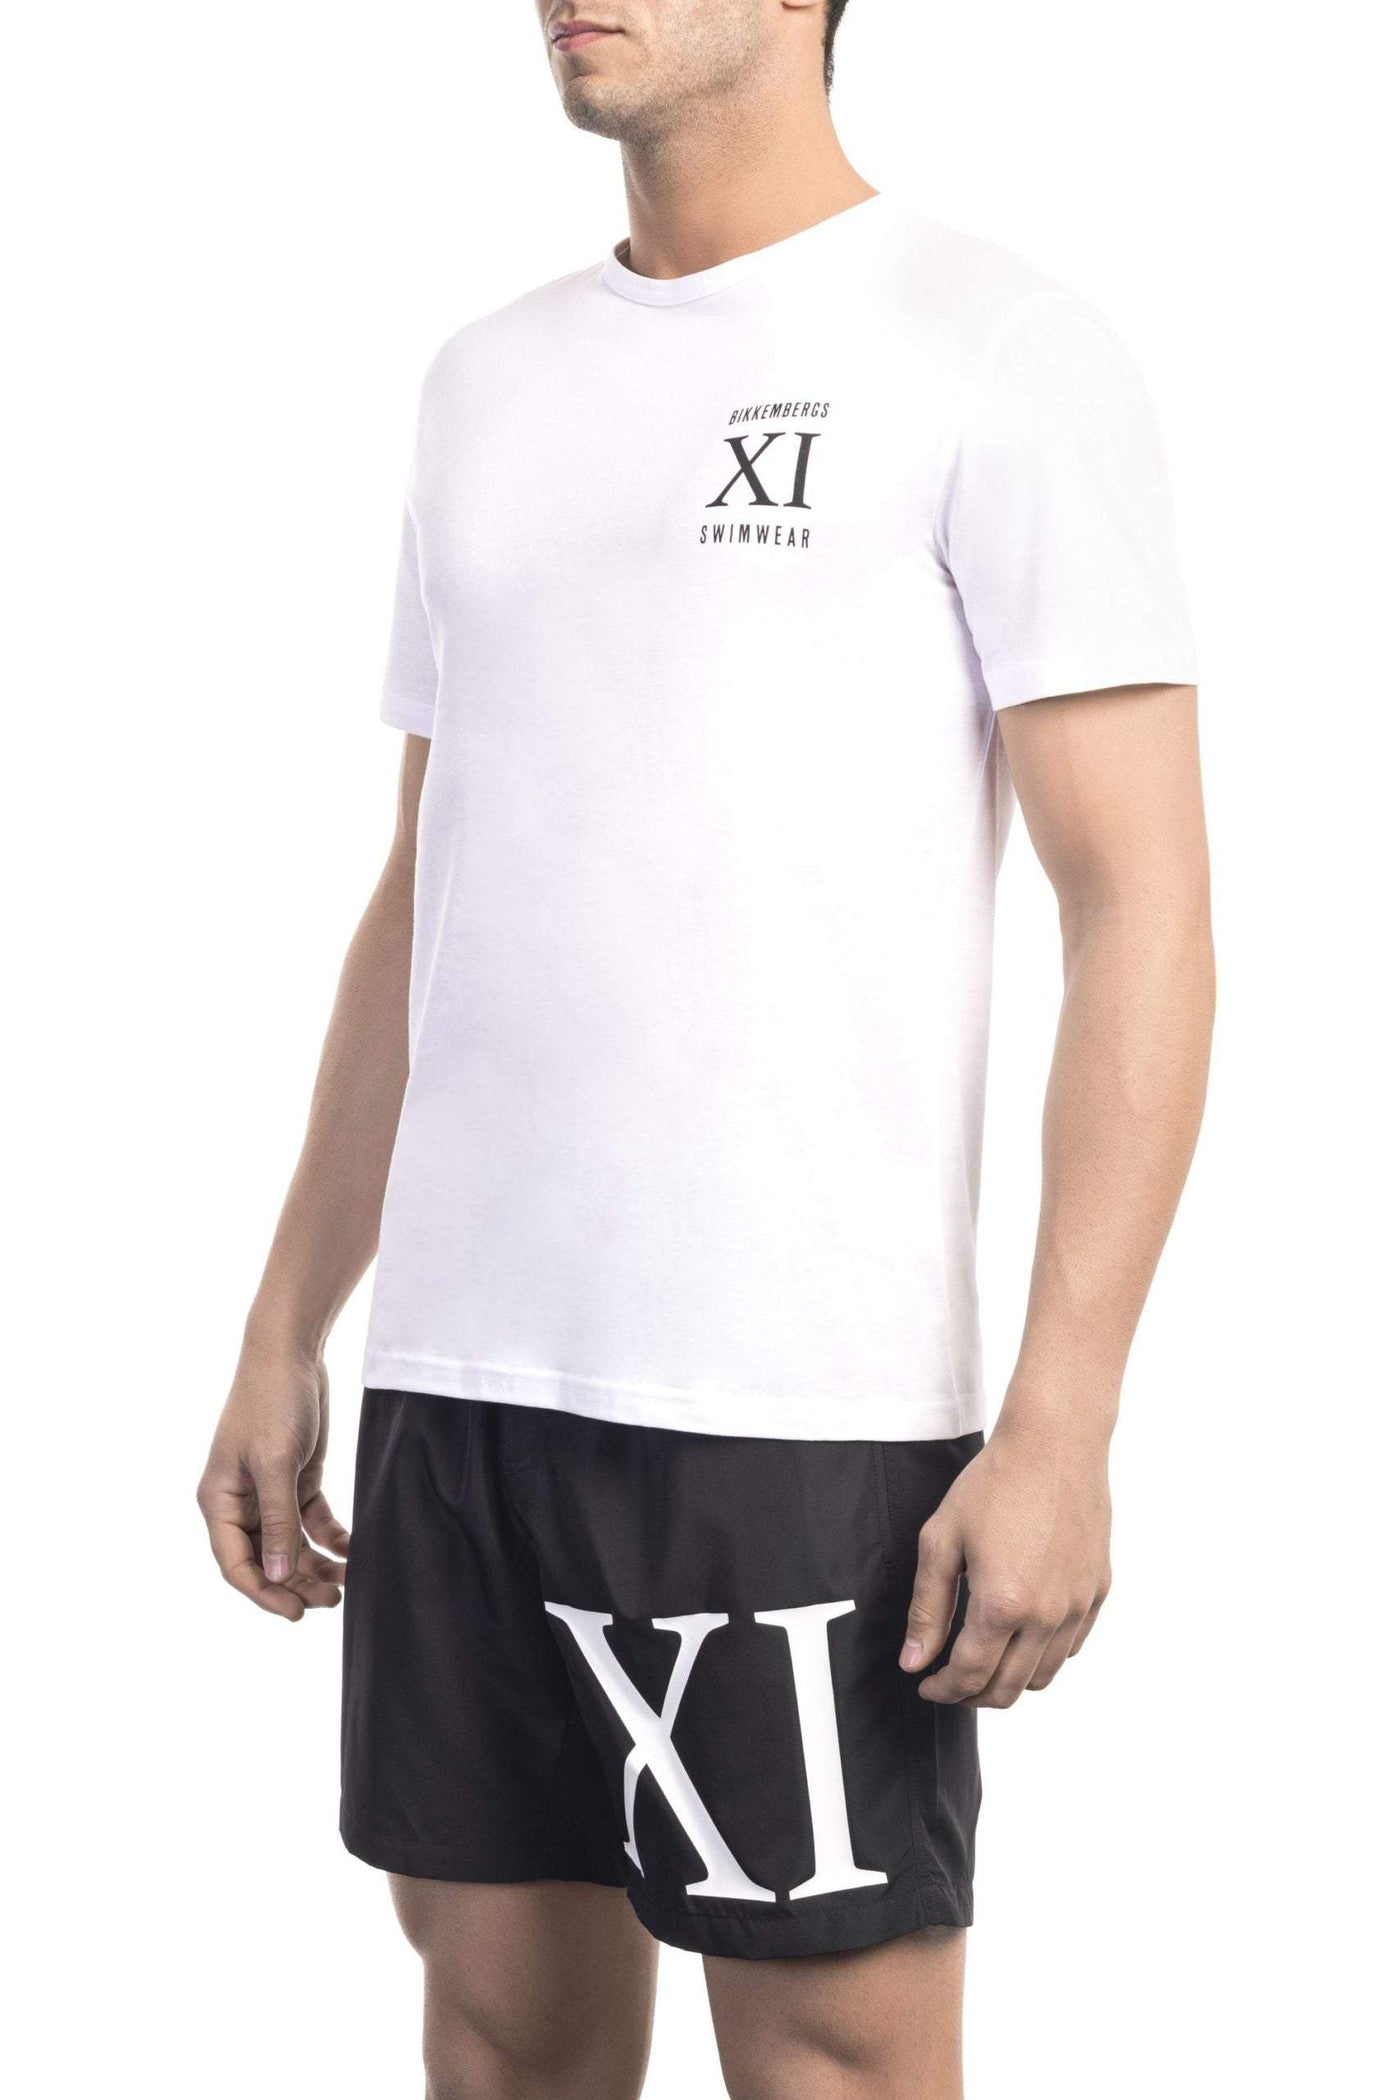 Bikkembergs White Cotton T-Shirt #men, Bikkembergs, feed-1, L, M, S, T-Shirts - Men - Clothing, White, XL at SEYMAYKA